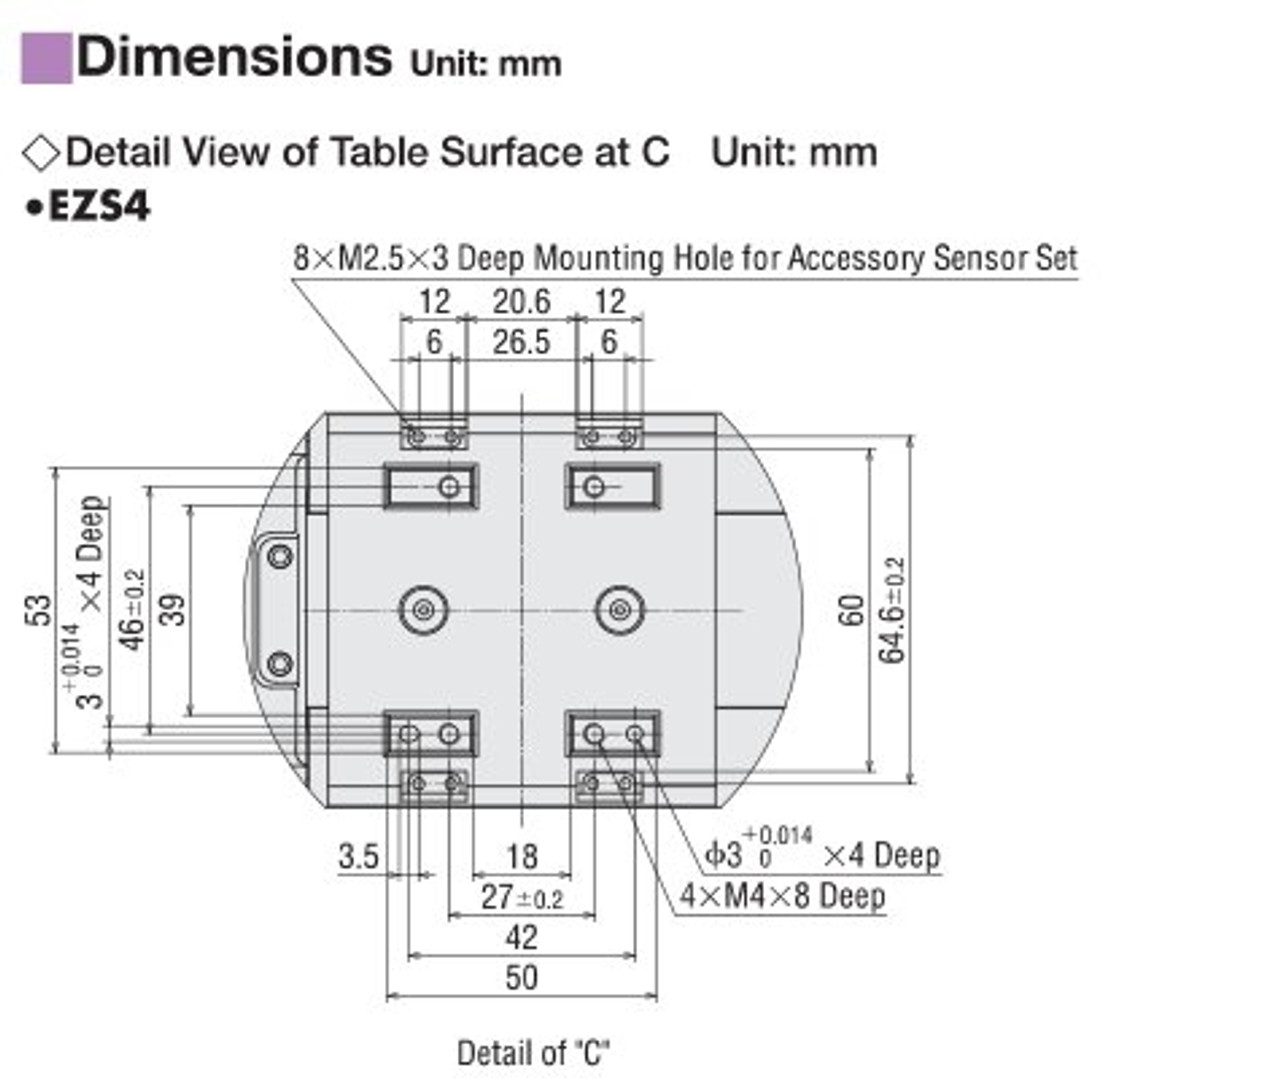 EZSM4D005AZMC - Dimensions